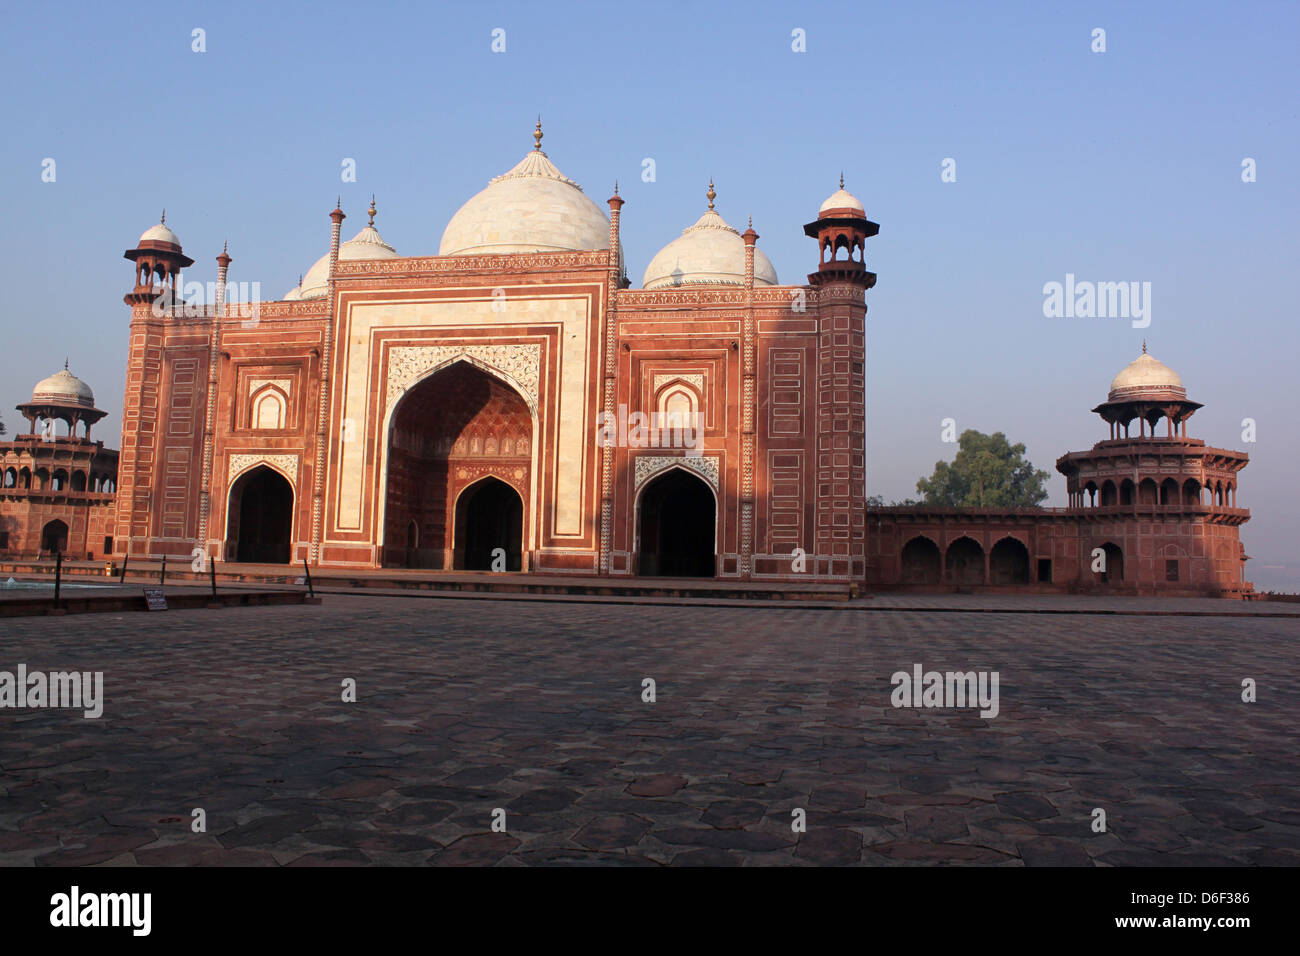 Mosquée Taj Mahal, site du patrimoine mondial de l'Agra, Uttar Pradesh, Inde Banque D'Images